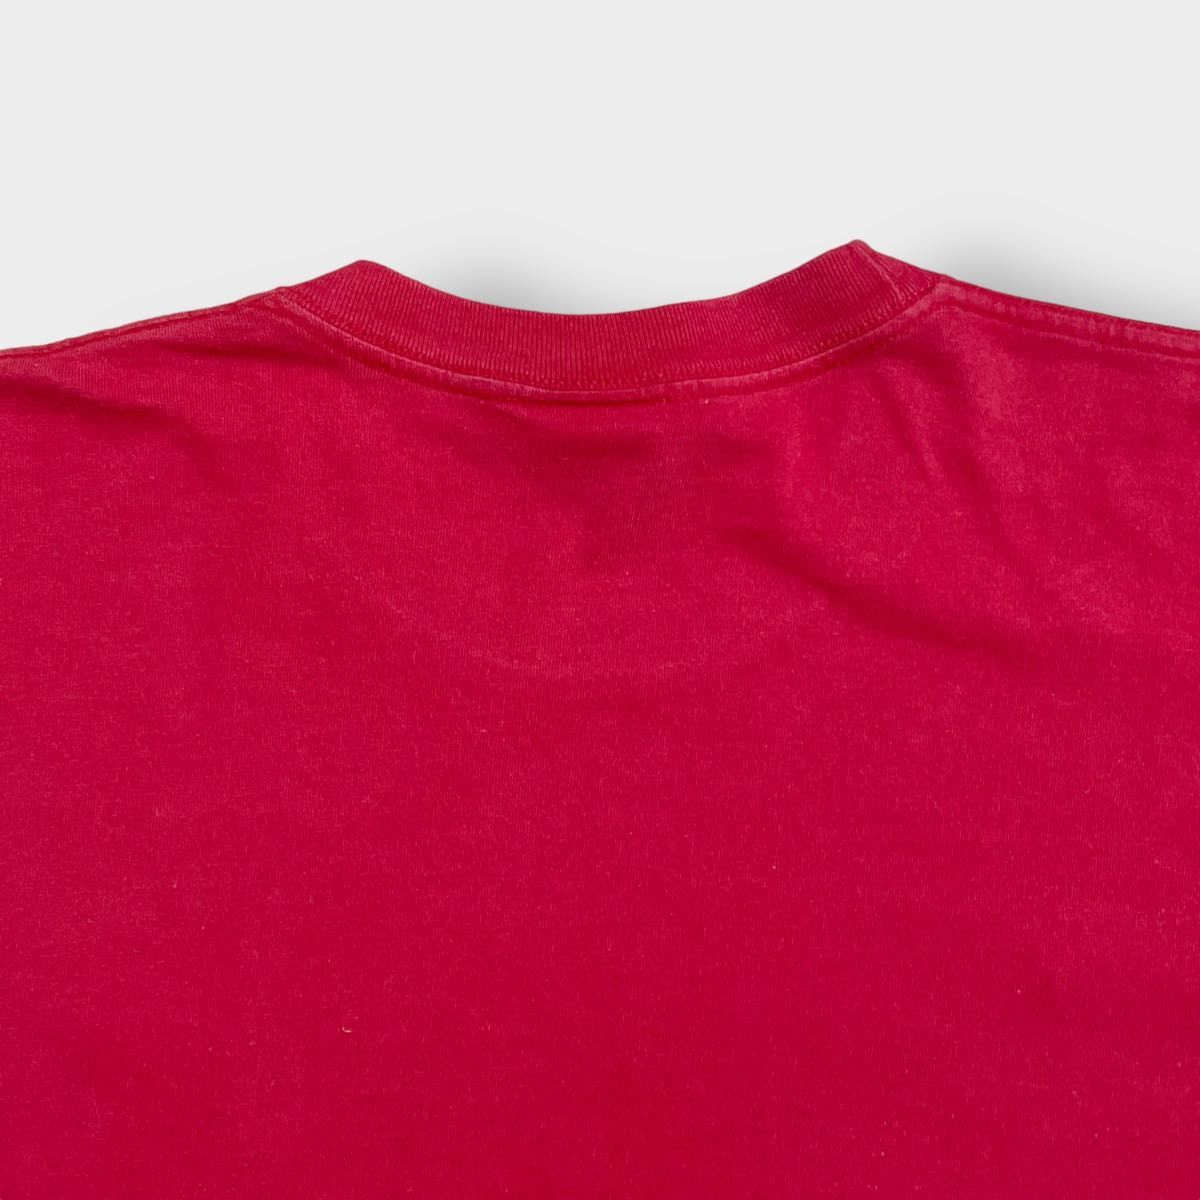 【NUTMEG】90s USA製 Tシャツ プリント MLB 公式 カージナルス XL ビッグサイズ シングルステッチ US古着